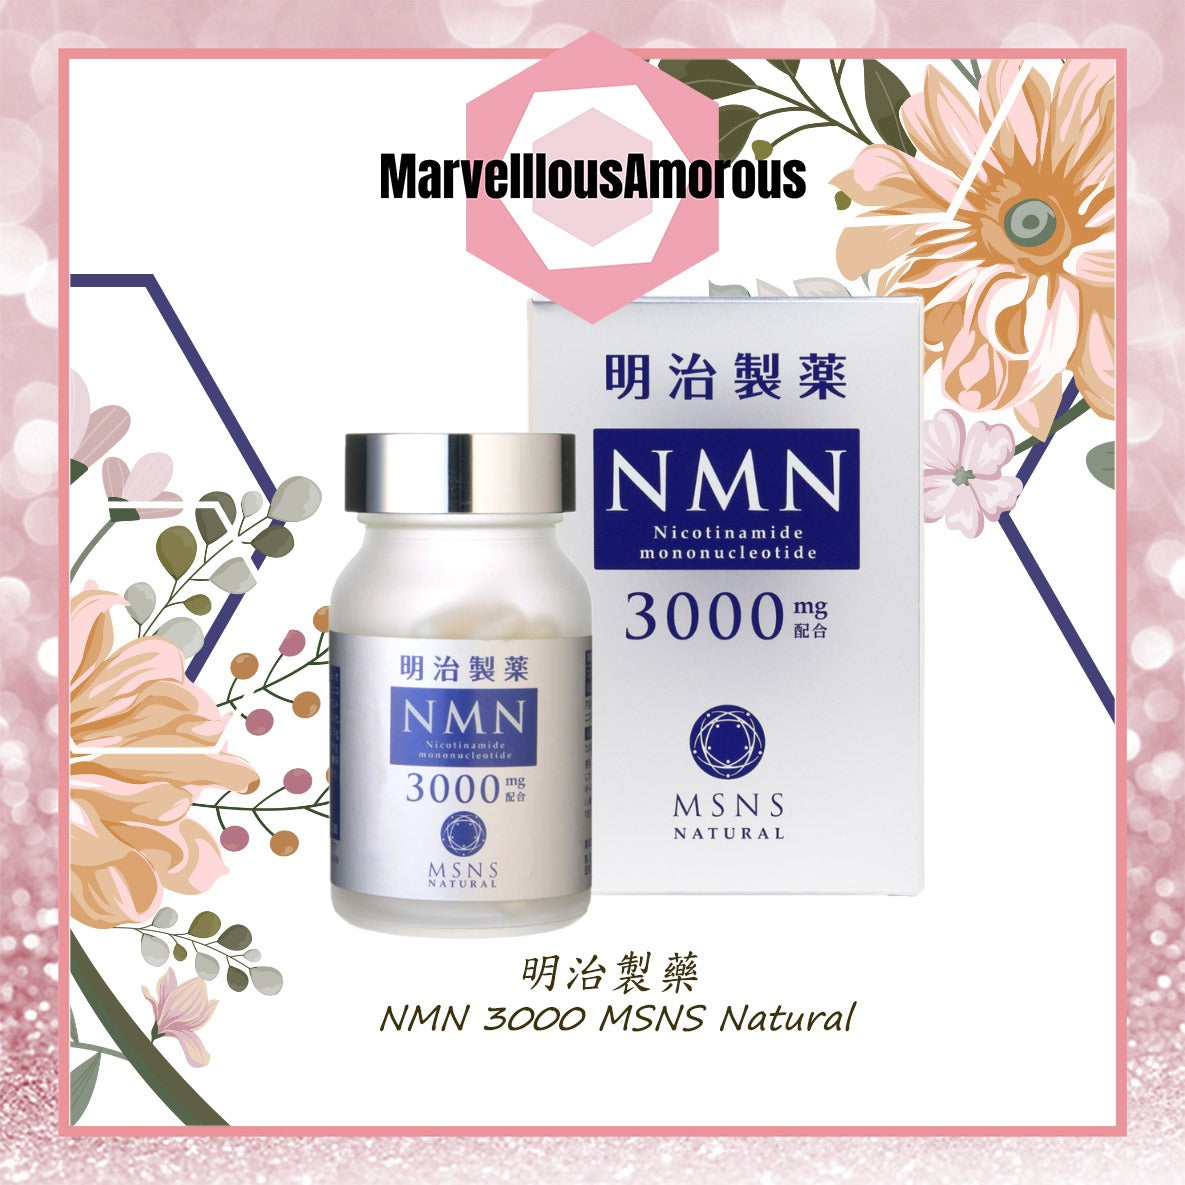 全日本送料無料 明治製薬 10000mg 60粒 MSNS Supreme 10000 NMN 健康